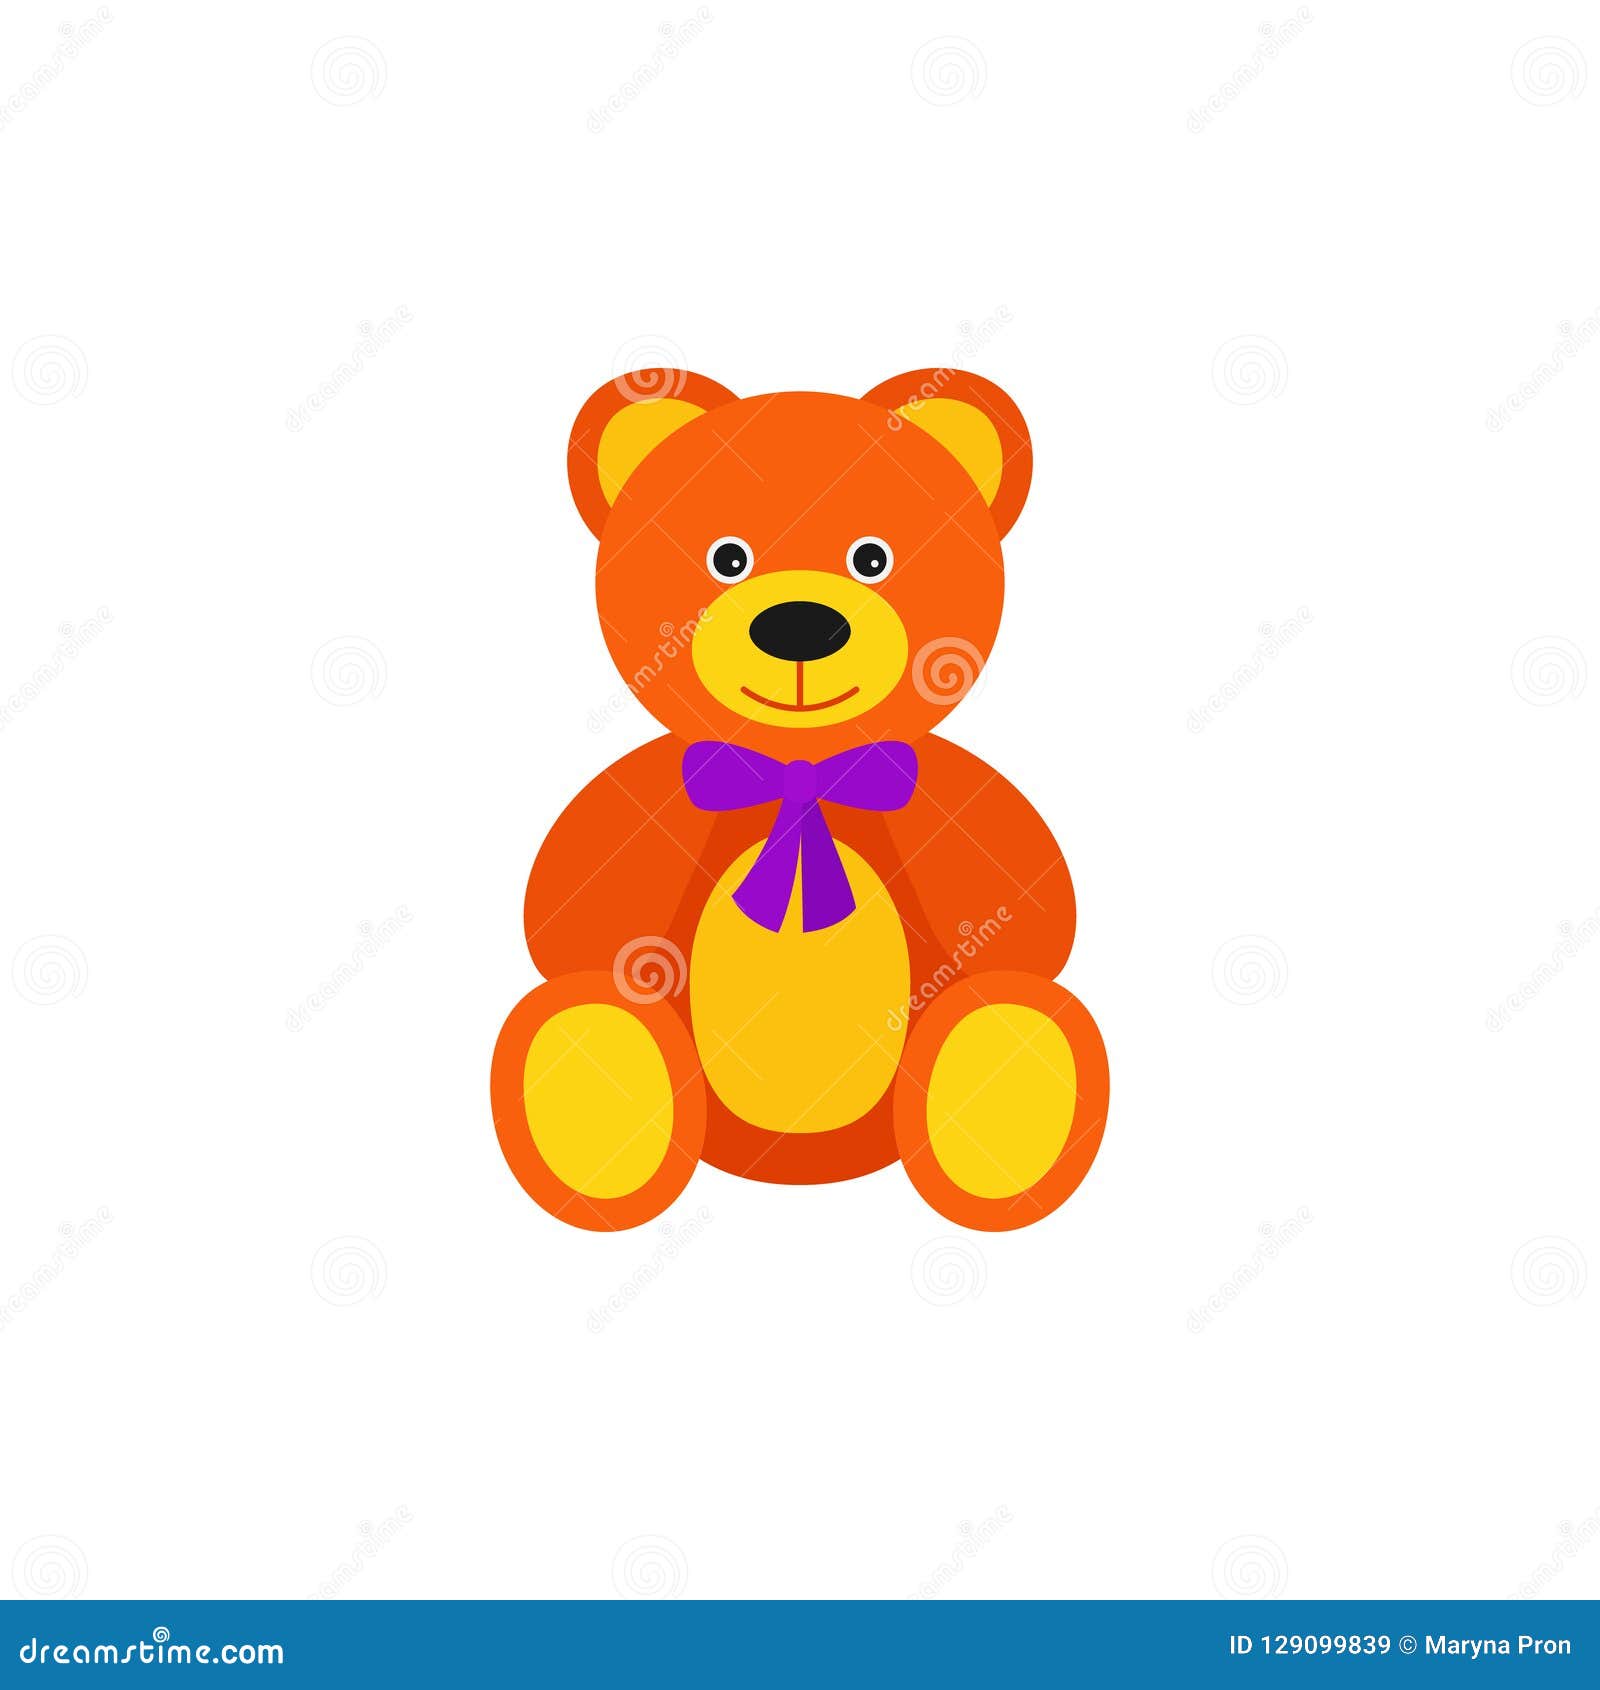 Teddy Bear Baby Toy In Flat Design Vector Cartoon Illustration Stock Vector Illustration Of Bright Cartoon